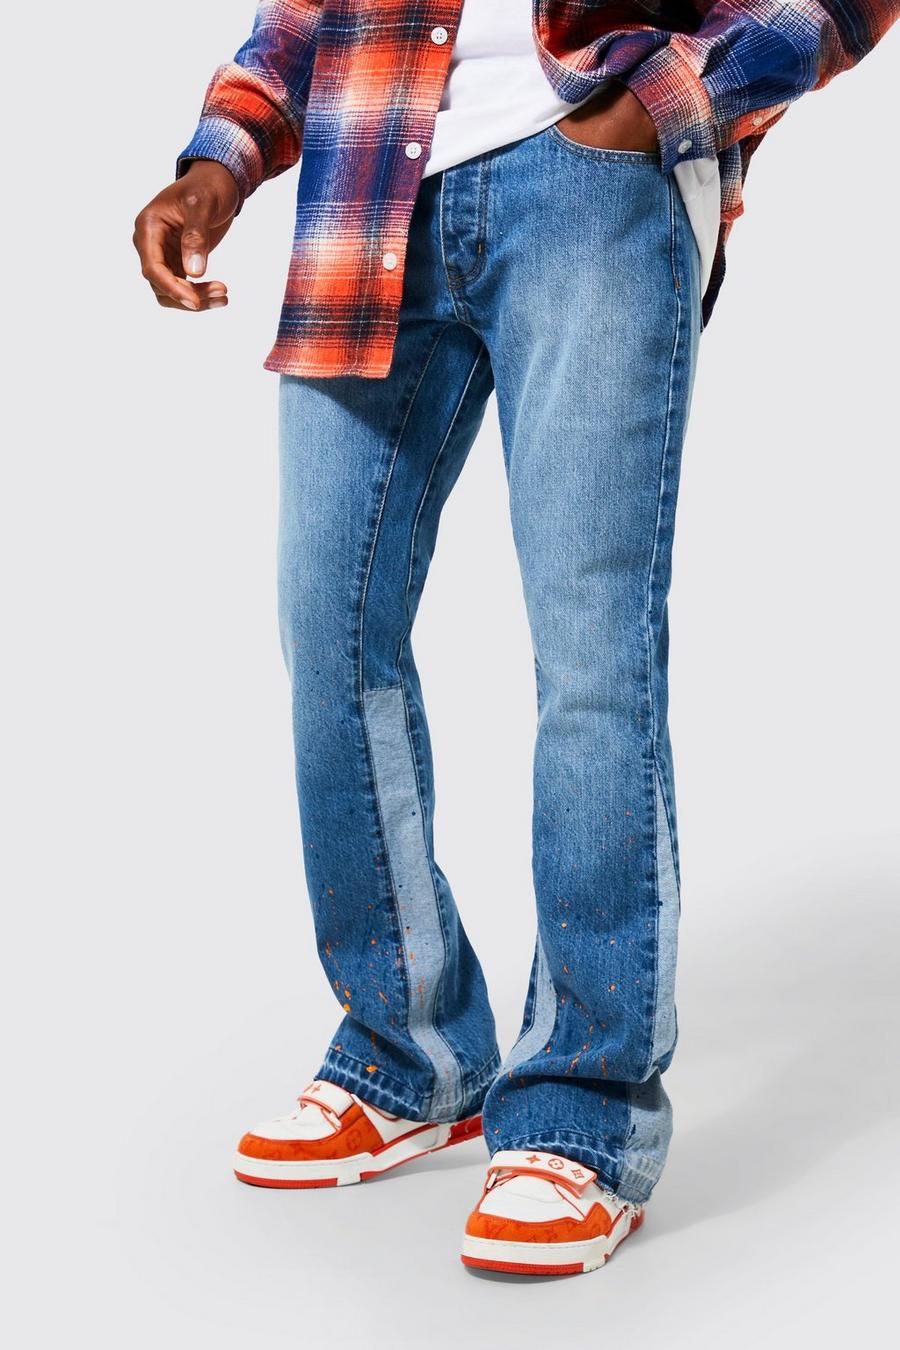 כחול בהיר ג'ינס בגזרת סקיני עם כתמי התזת צבע ופאנלים